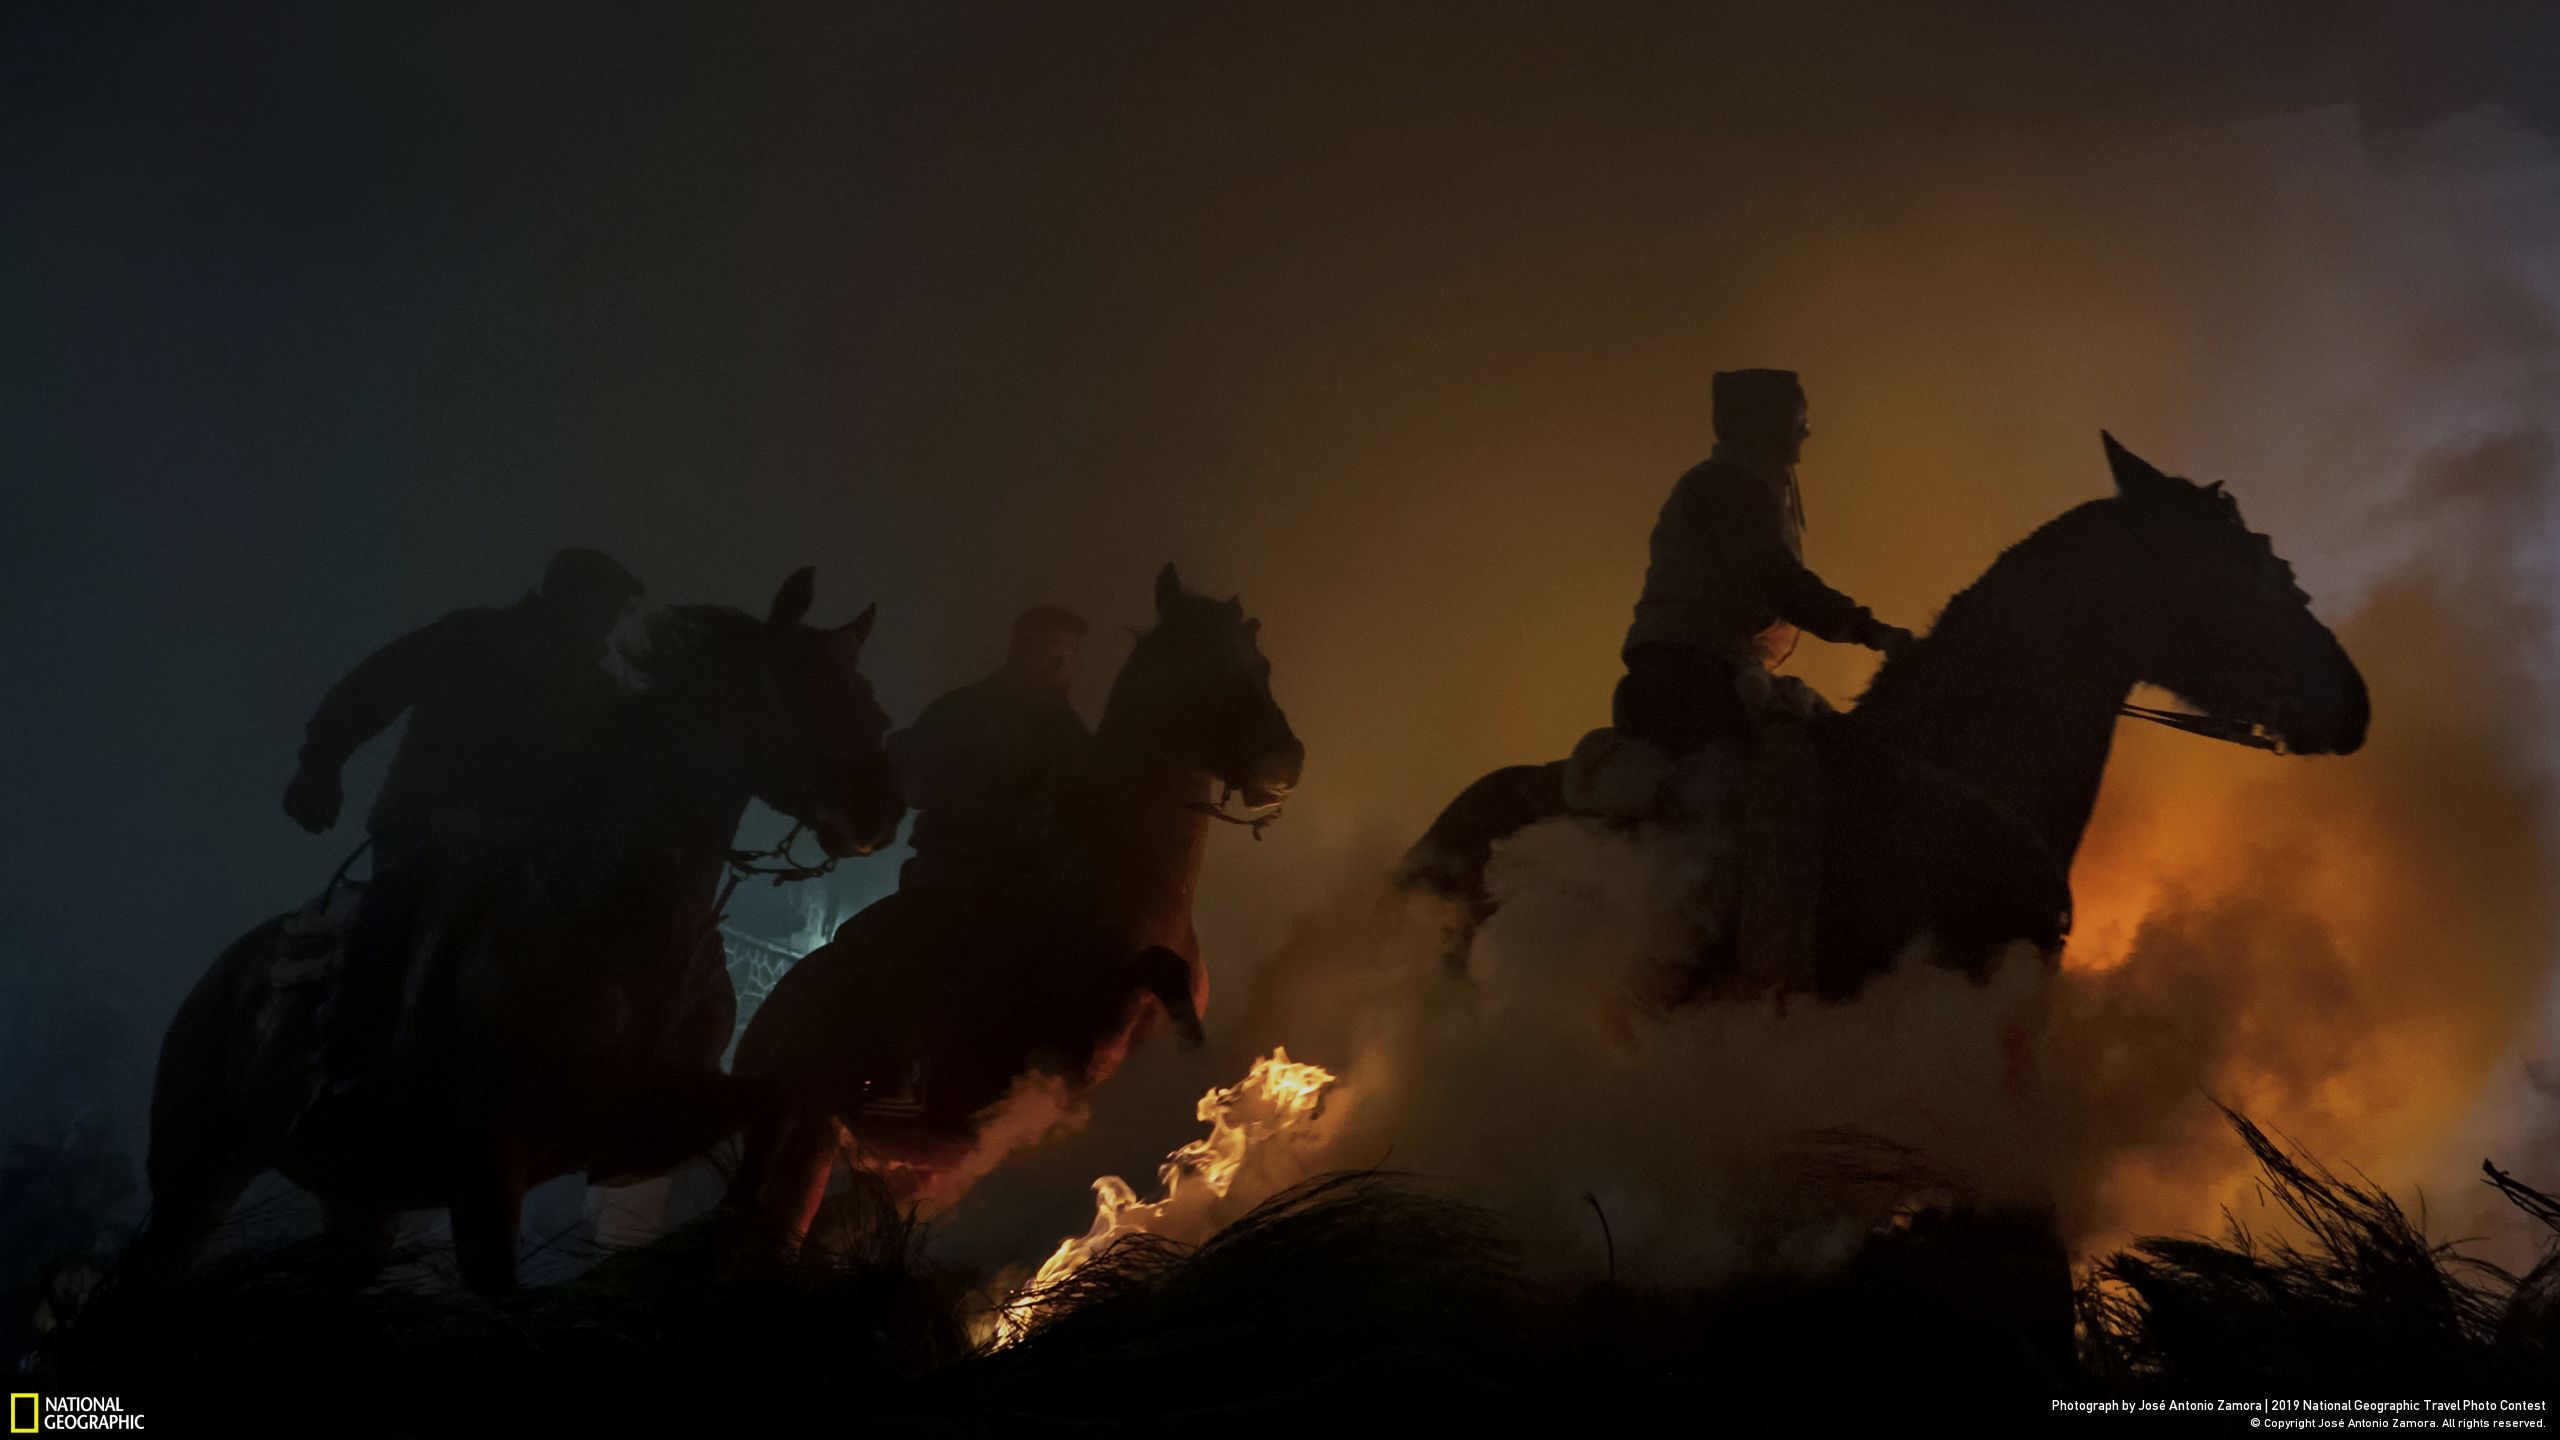 Đạt giải ba mục Con người là ảnh “Horses” (tạm dịch: “Những con ngựa”) của Jose Antonio Zamora. Bức ảnh chụp lễ hội cưỡi ngựa phi qua lửa Las Luminarias ở Tây Ban Nha. Là lễ hội truyền thống có từ hơn 500 năm trước, Las Luminarias được tổ chức vào đêm trước ngày lễ thánh Anthony - vị thánh cai quản các loài động vật được thuần hóa ở Tây Ban Nha.